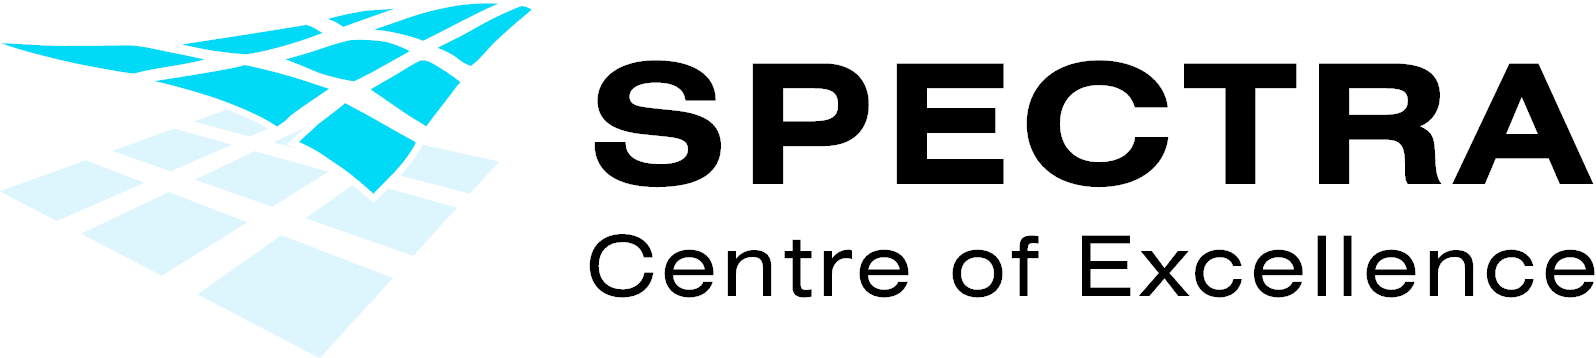 Spectra Centre of Excellence EU logo